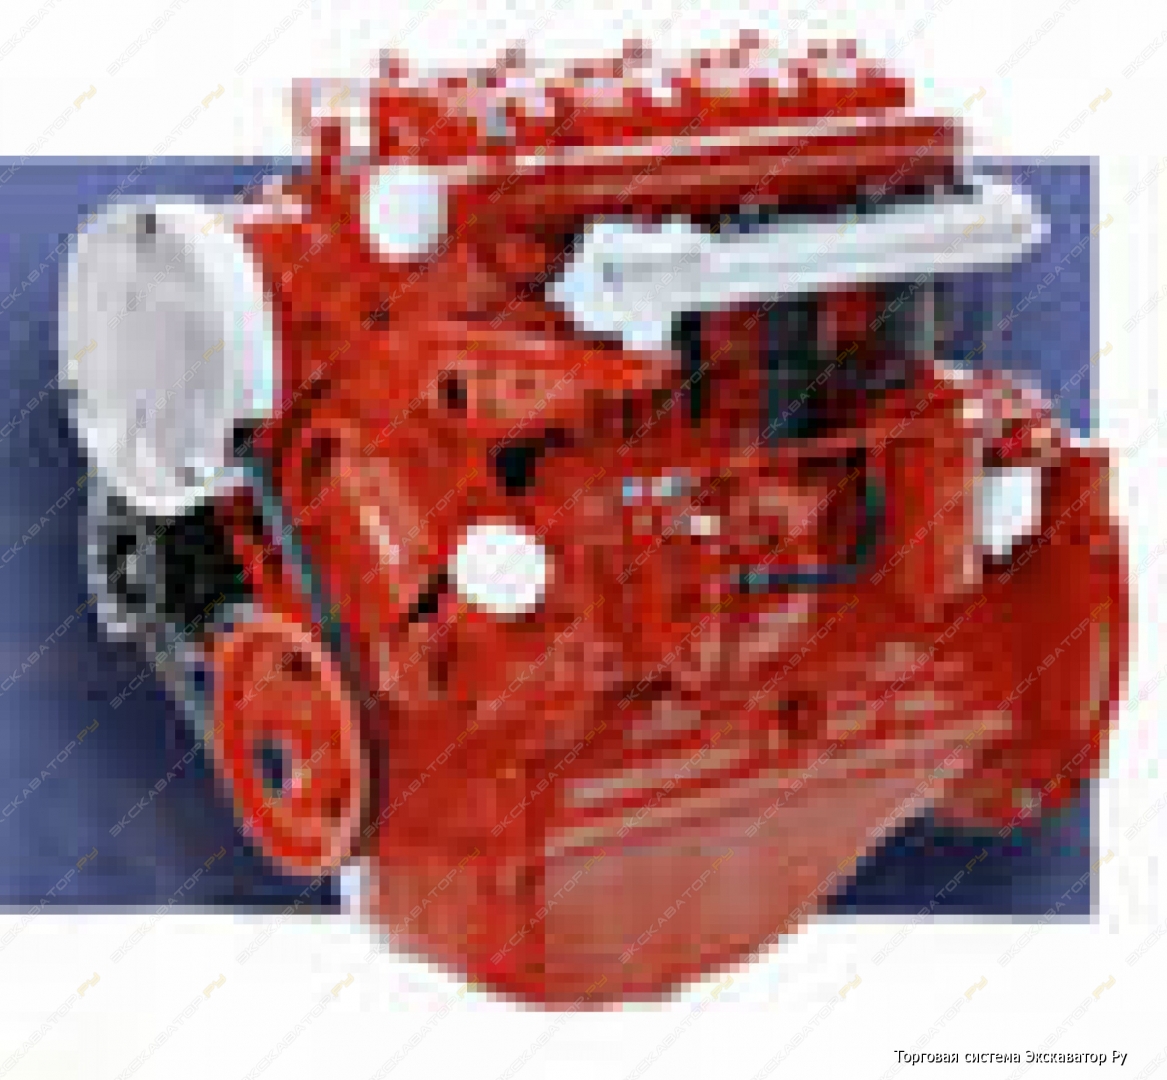 Двигатель д 144 т. Трактор т 40 двигатель д 144. Двигатель ВТЗ Д-130. Двигатель д-120 (ВТЗ). Двигатель на трактор т 28 д144.